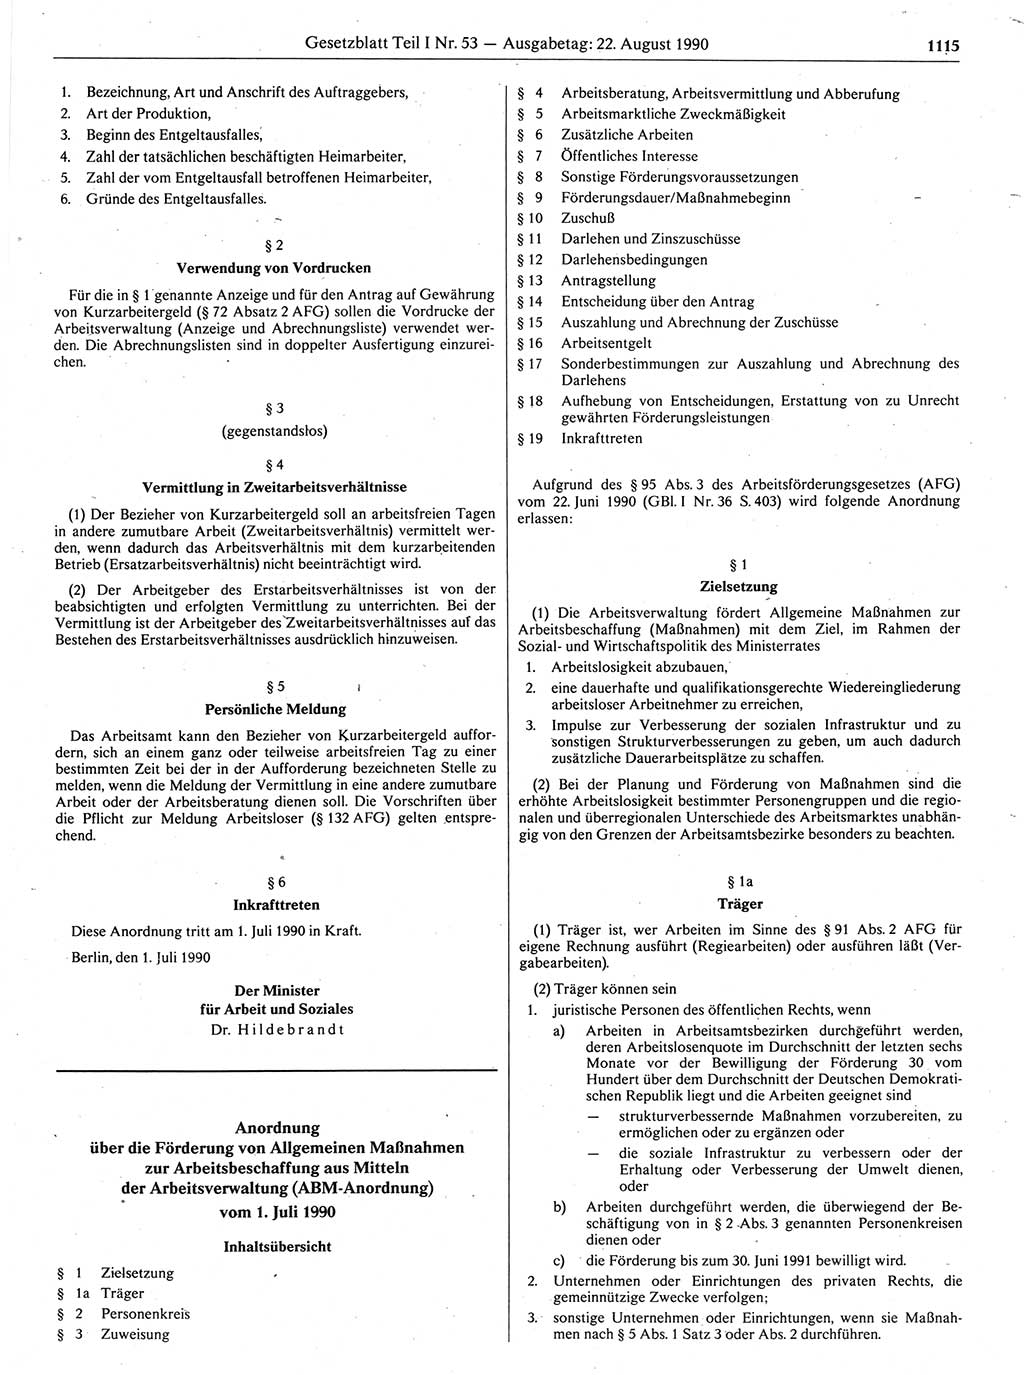 Gesetzblatt (GBl.) der Deutschen Demokratischen Republik (DDR) Teil Ⅰ 1990, Seite 1115 (GBl. DDR Ⅰ 1990, S. 1115)